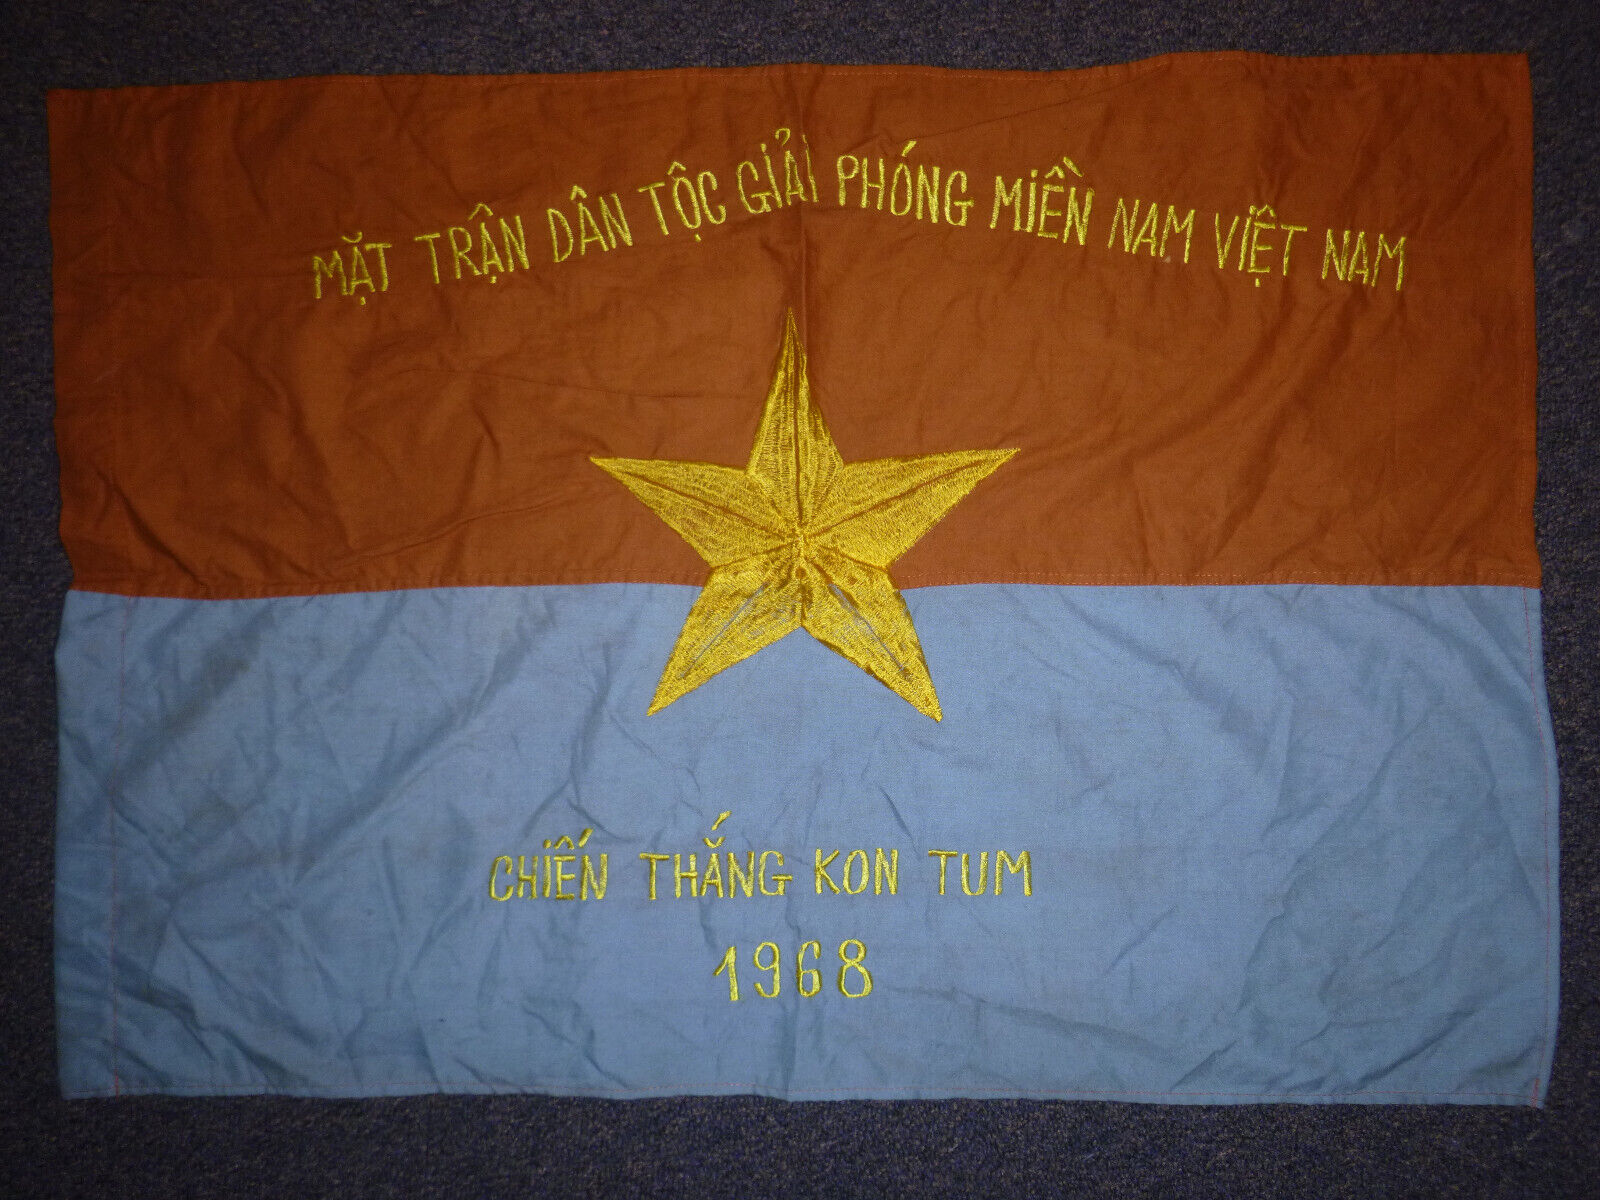 Battle of Kontum - NLF Viet Cong Flag - TET OFFENSIVE 1968 - Vietnam War - F.106